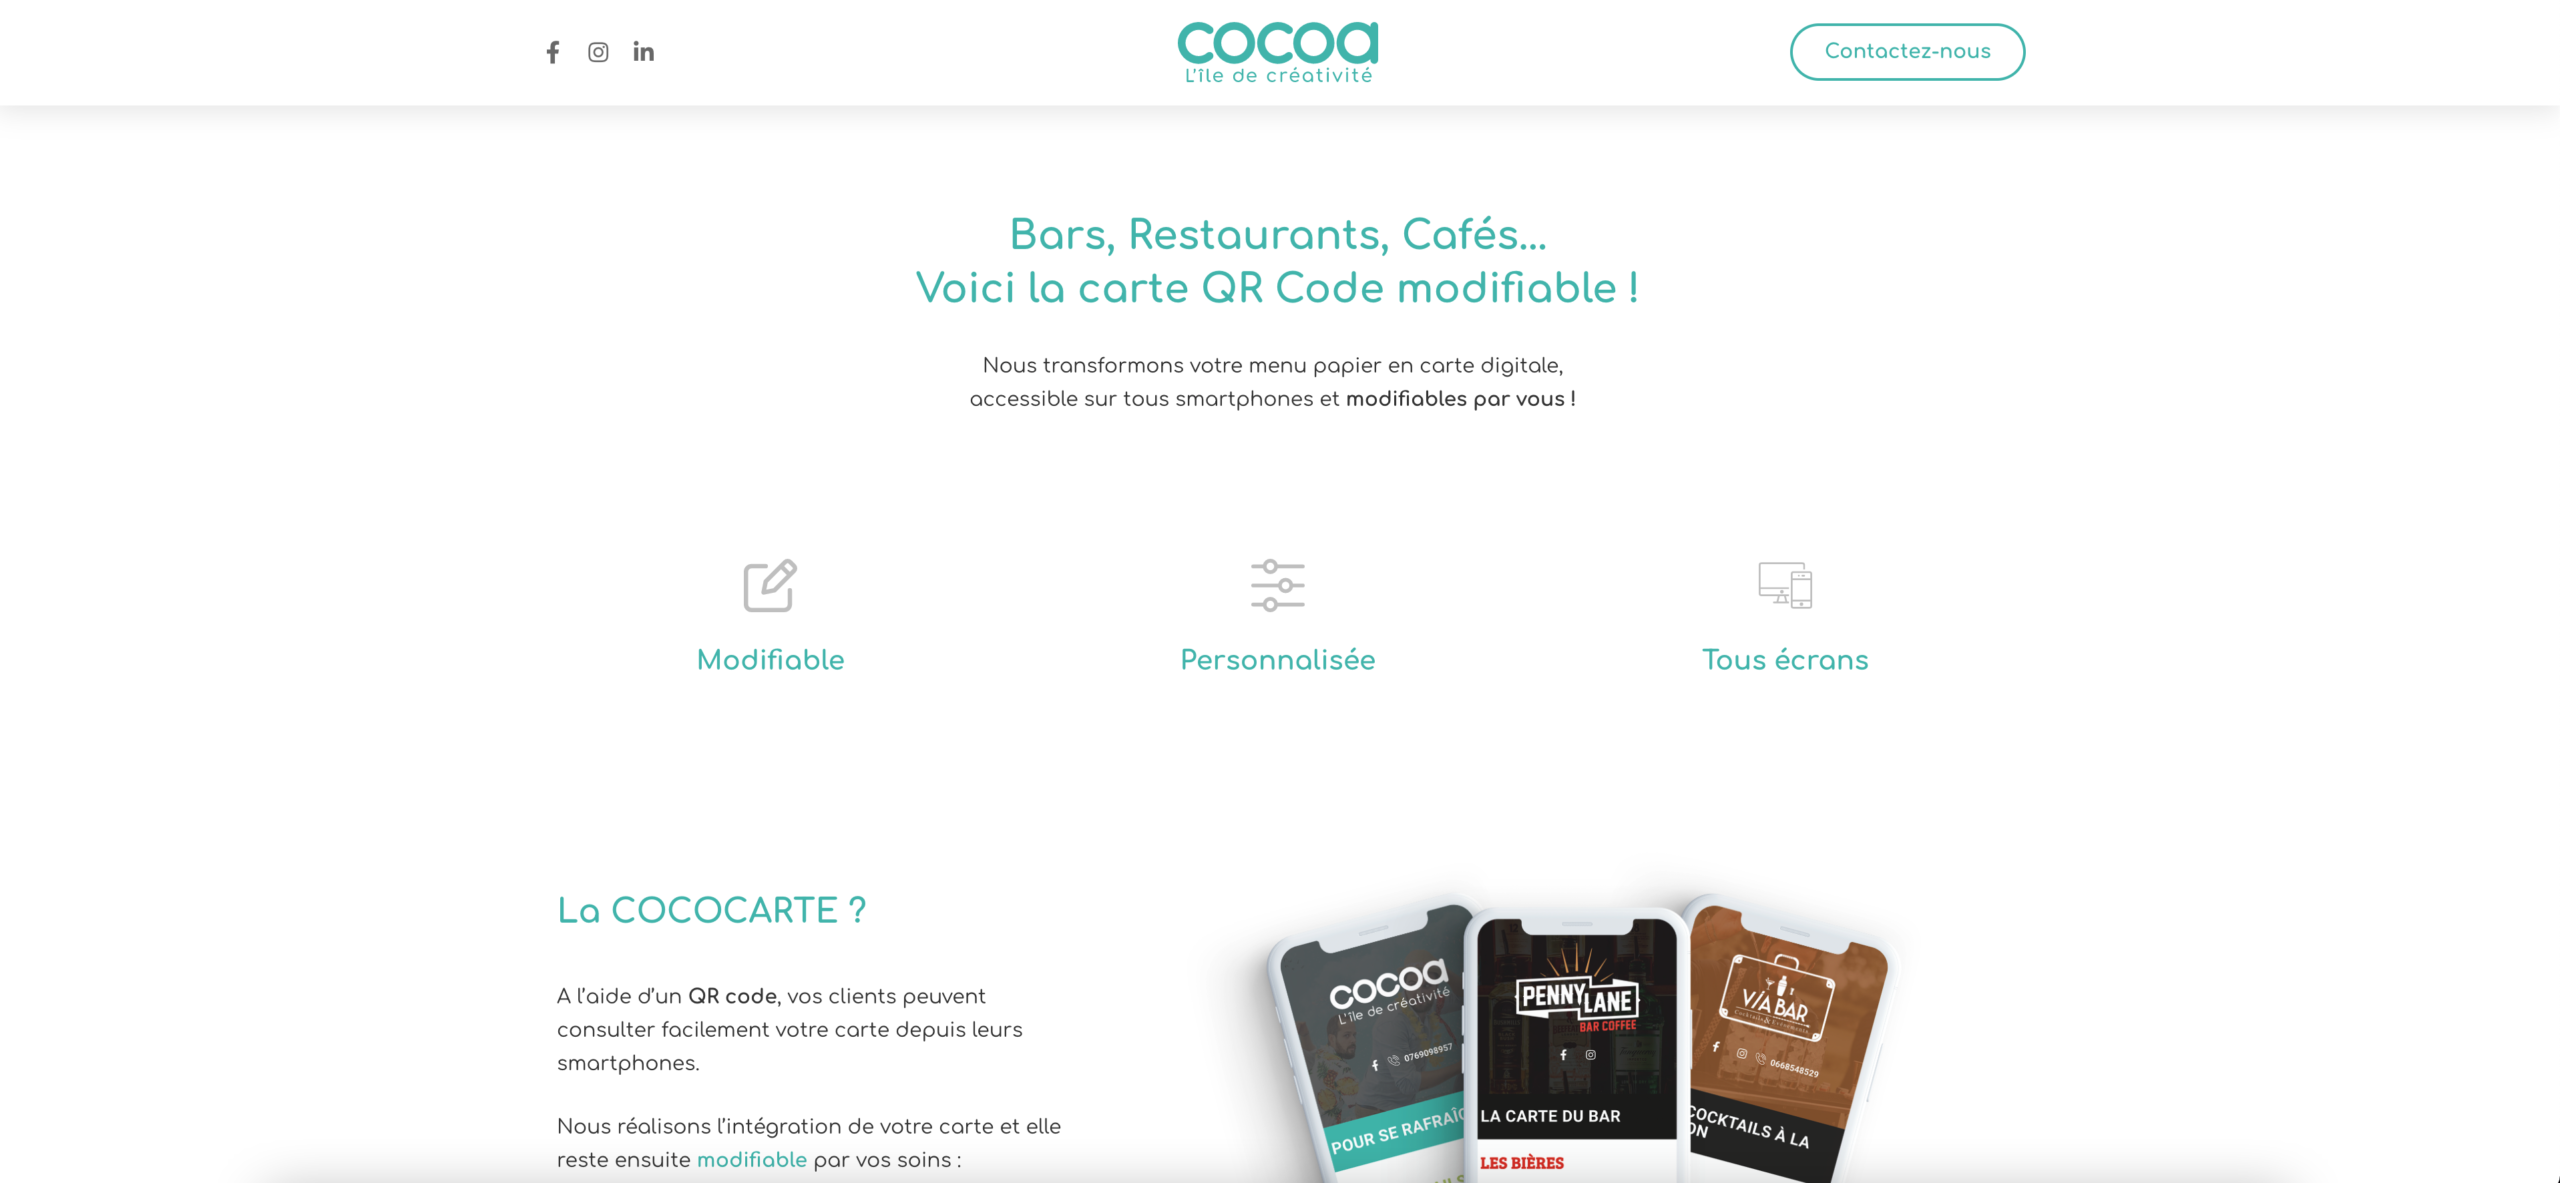 Cocoa l'île de la créativité : Agence de communication à Lille | Site web